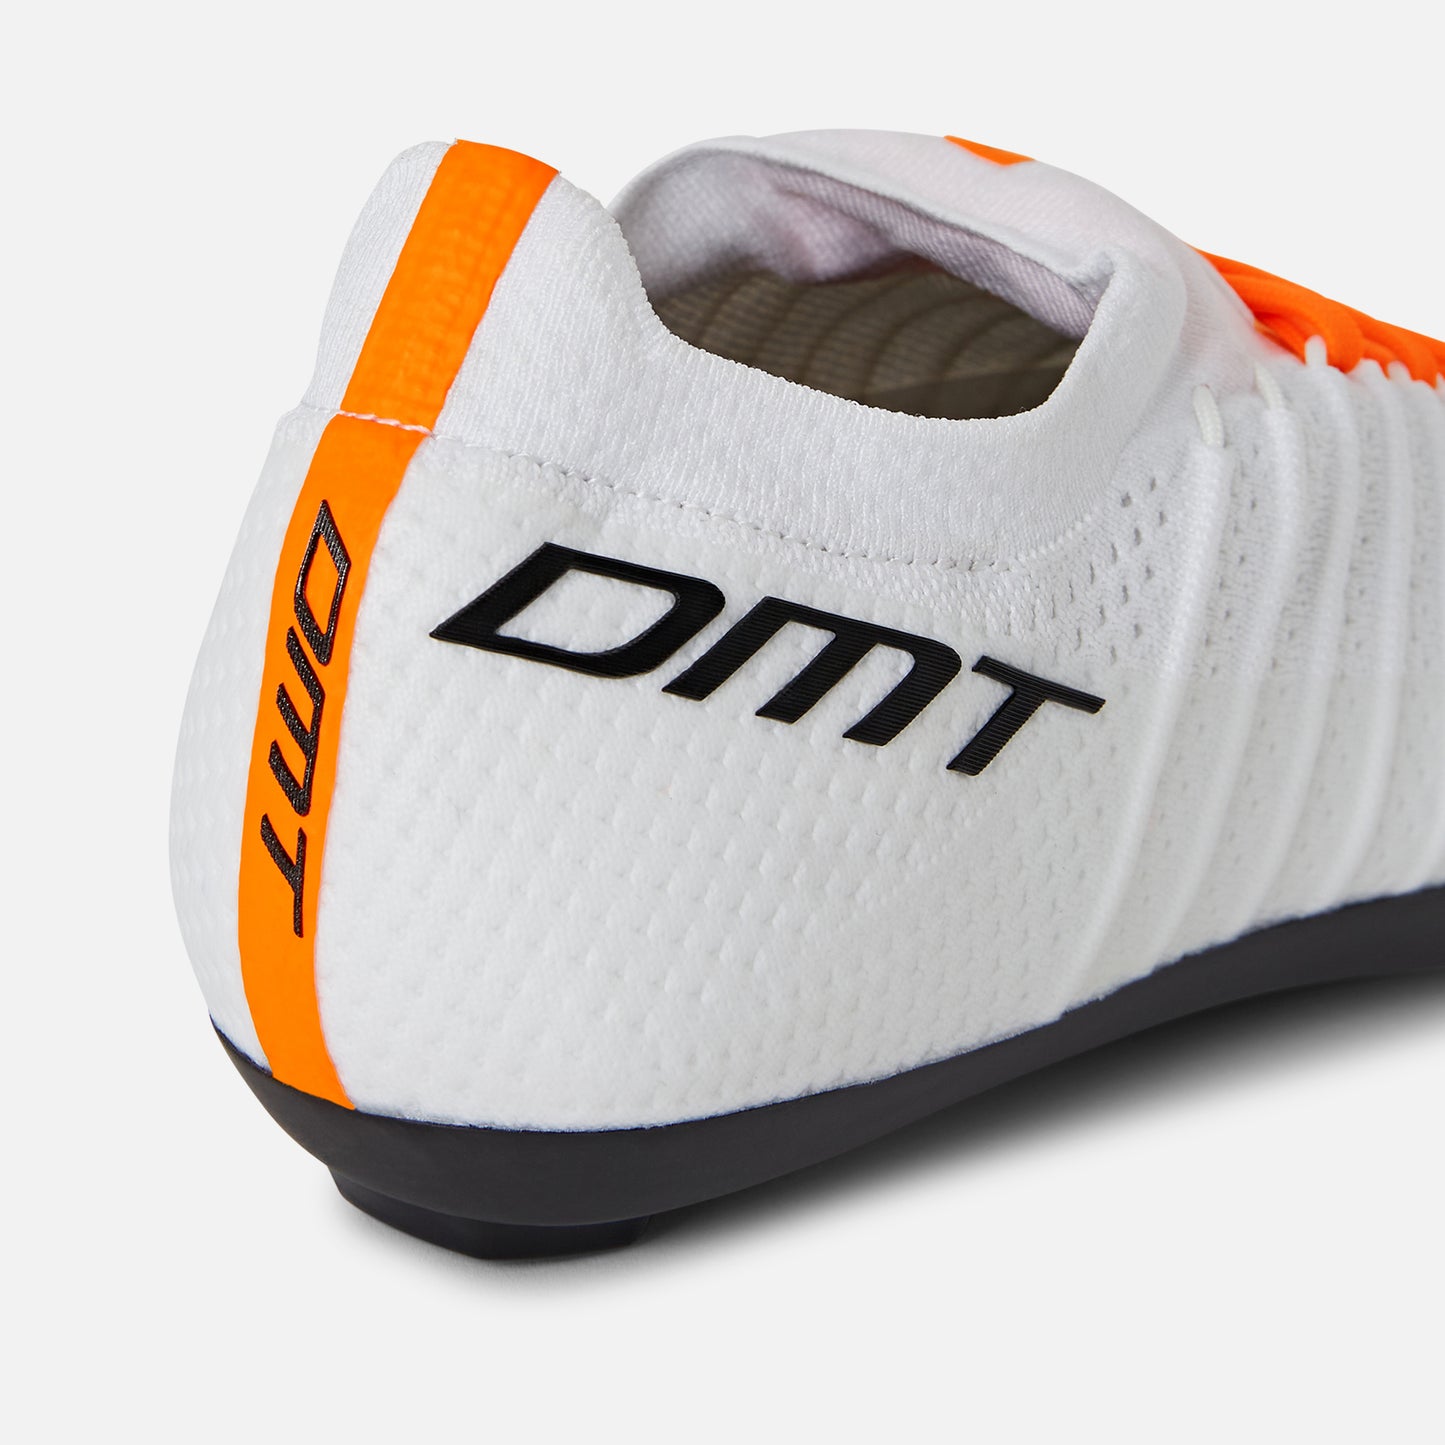 DMT Kr Sl bike shoes White/White - DMT Cycling